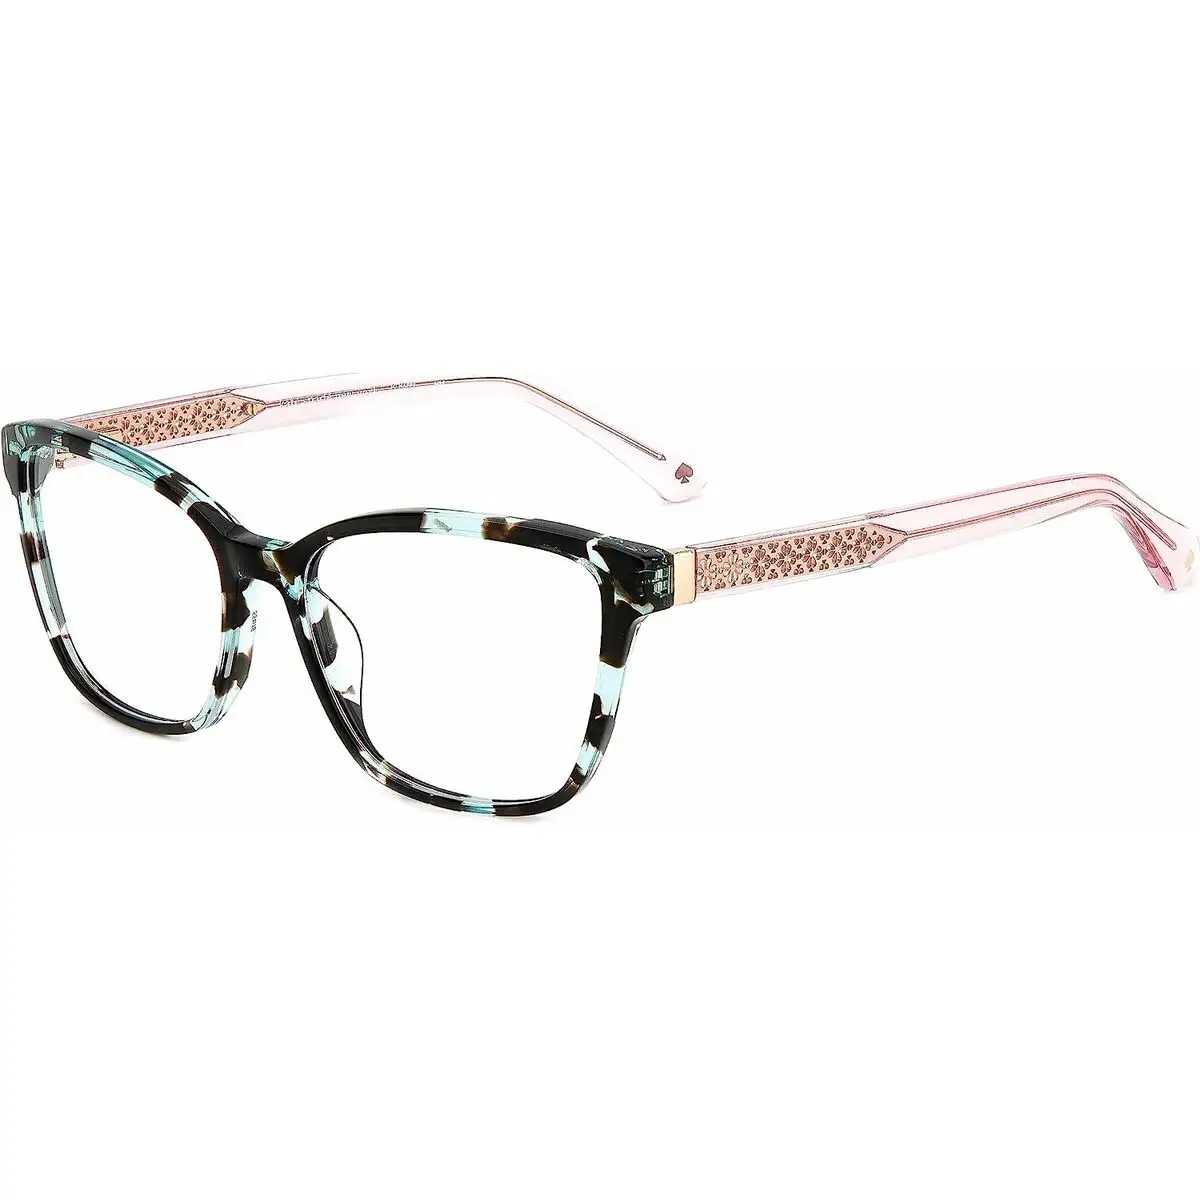 Monture de lunettes femme kate spade belen_7797. DIAYTAR SENEGAL - Là où l'Élégance Devient un Mode de Vie. Naviguez à travers notre gamme et choisissez des produits qui apportent une touche raffinée à votre quotidien.